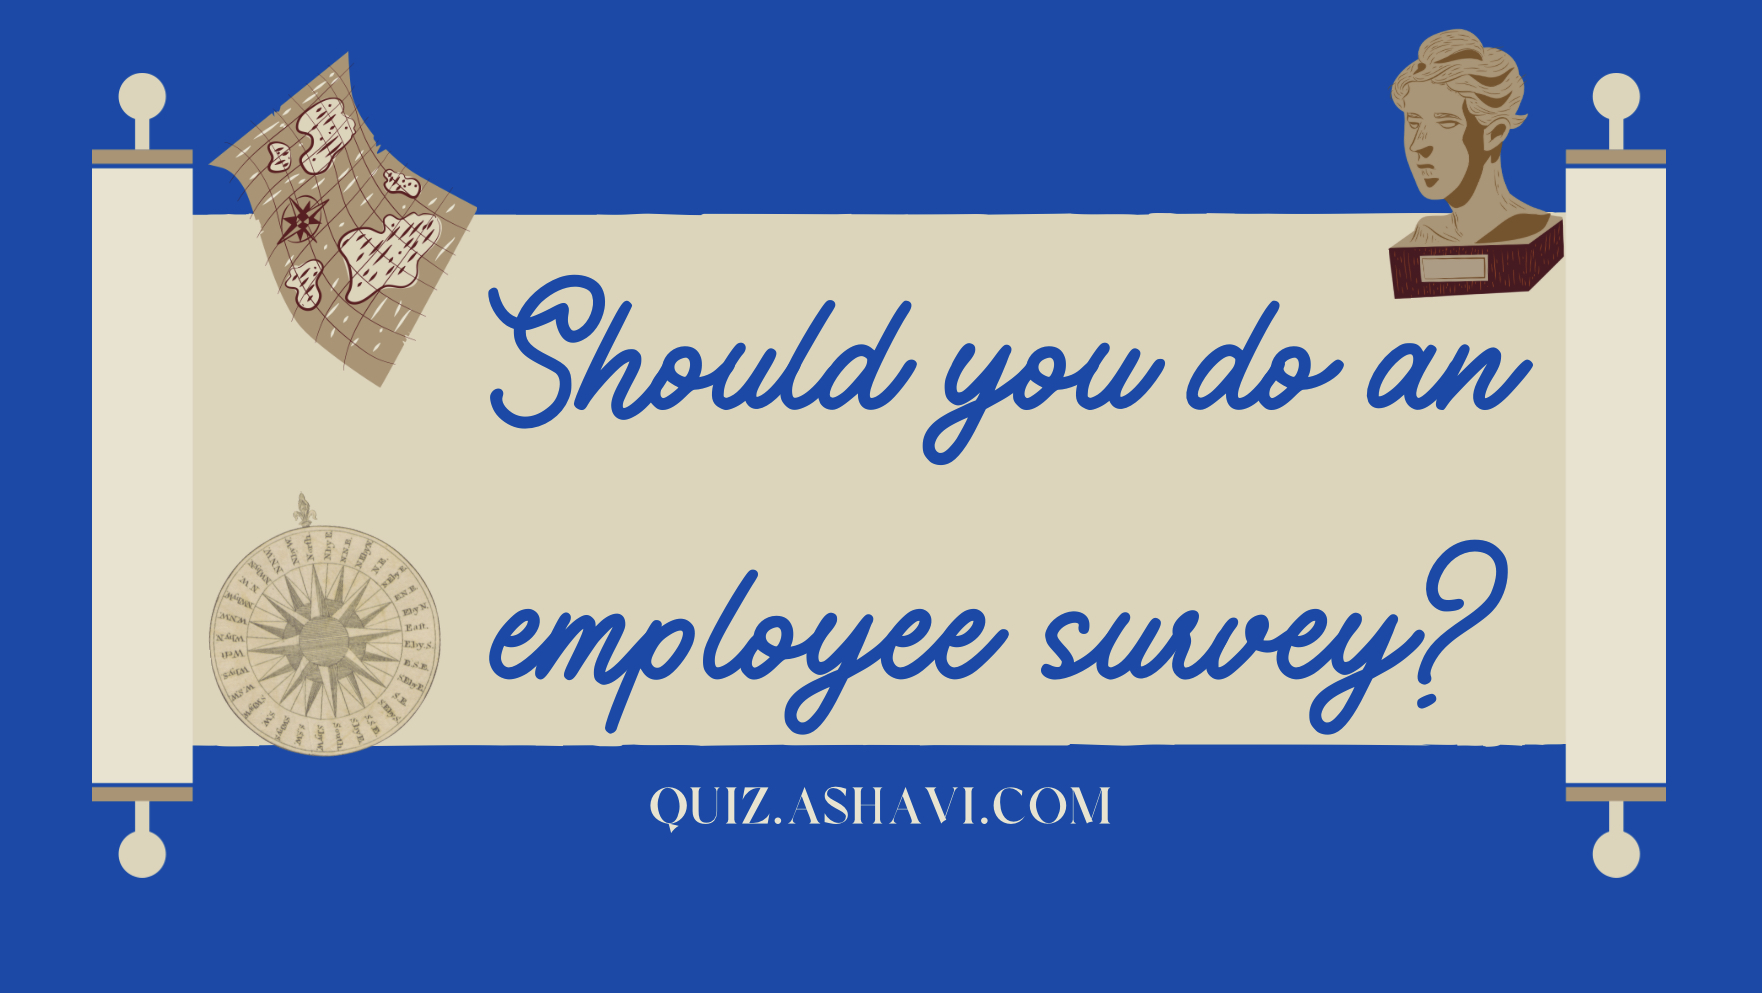 Should you do an employee survey?